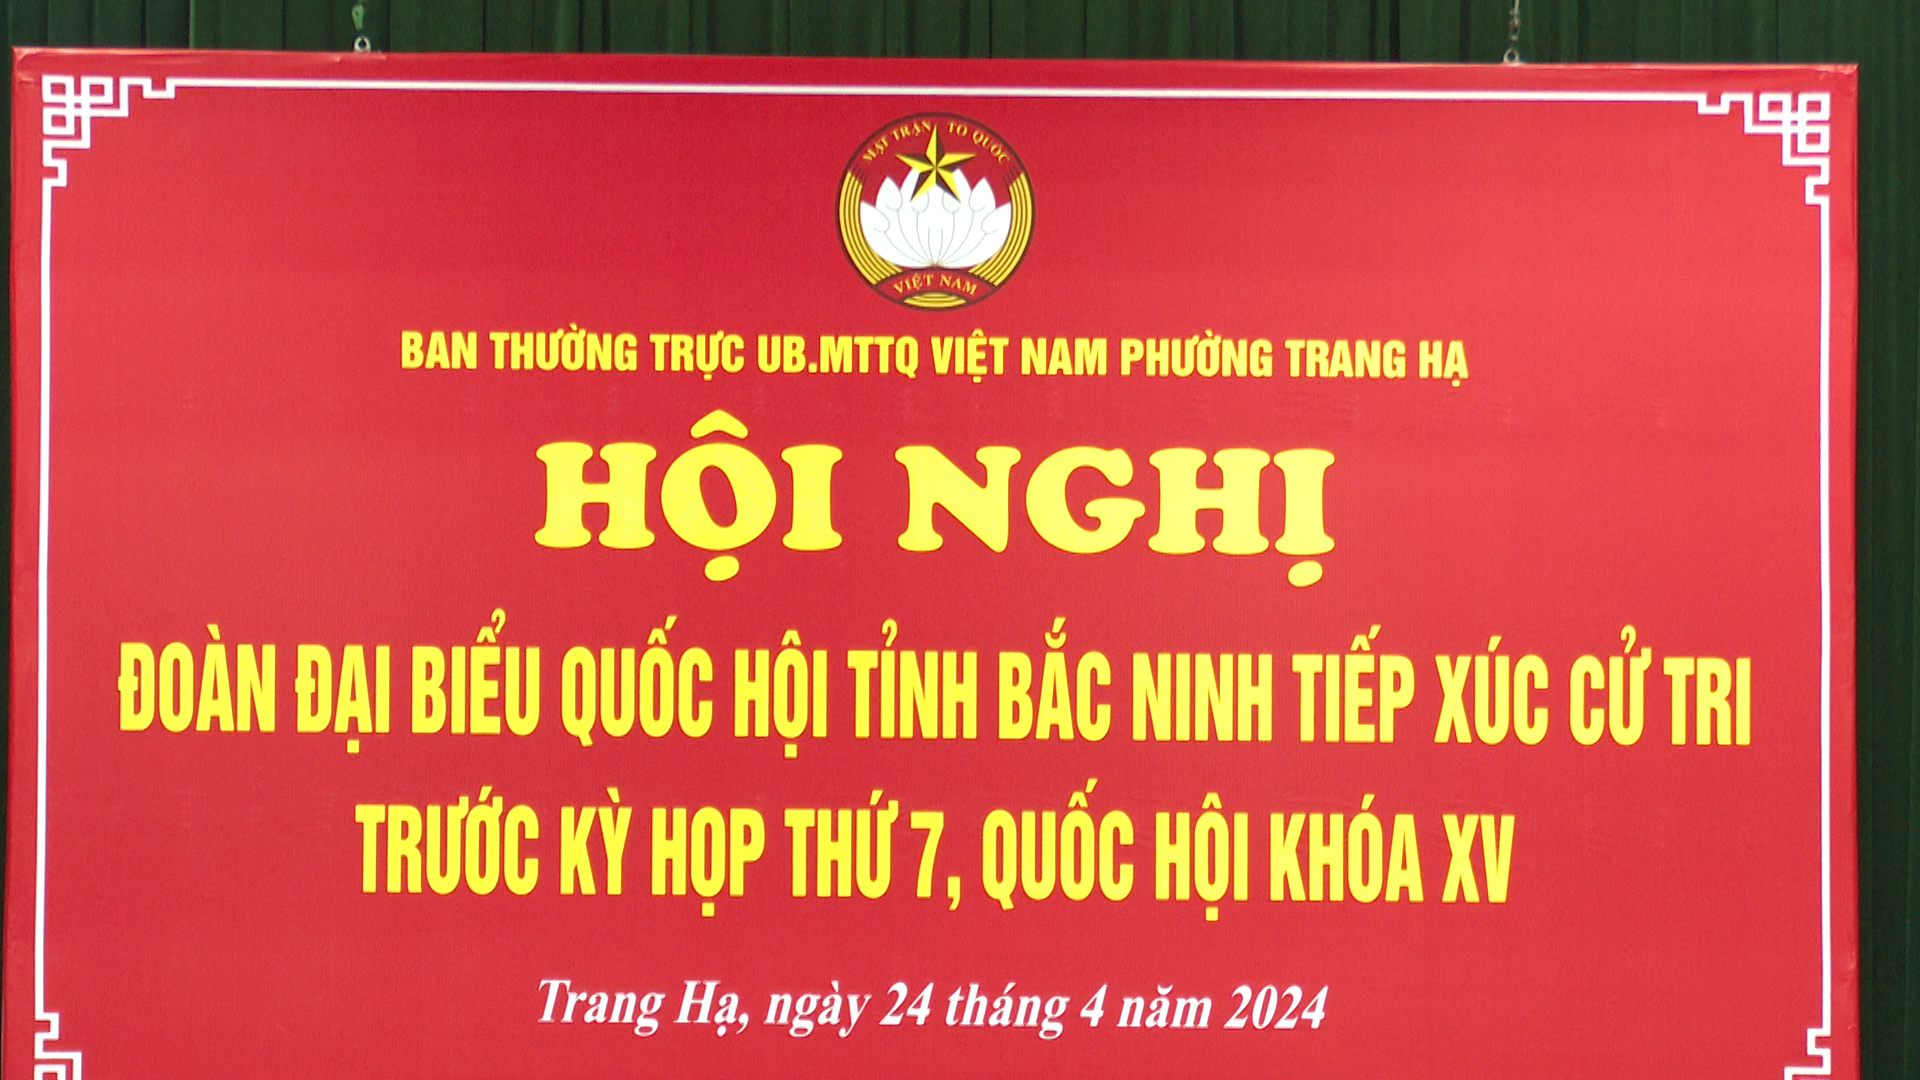 Đoàn Đại biểu Quốc hội tiếp xúc cử tri phường Trang Hạ